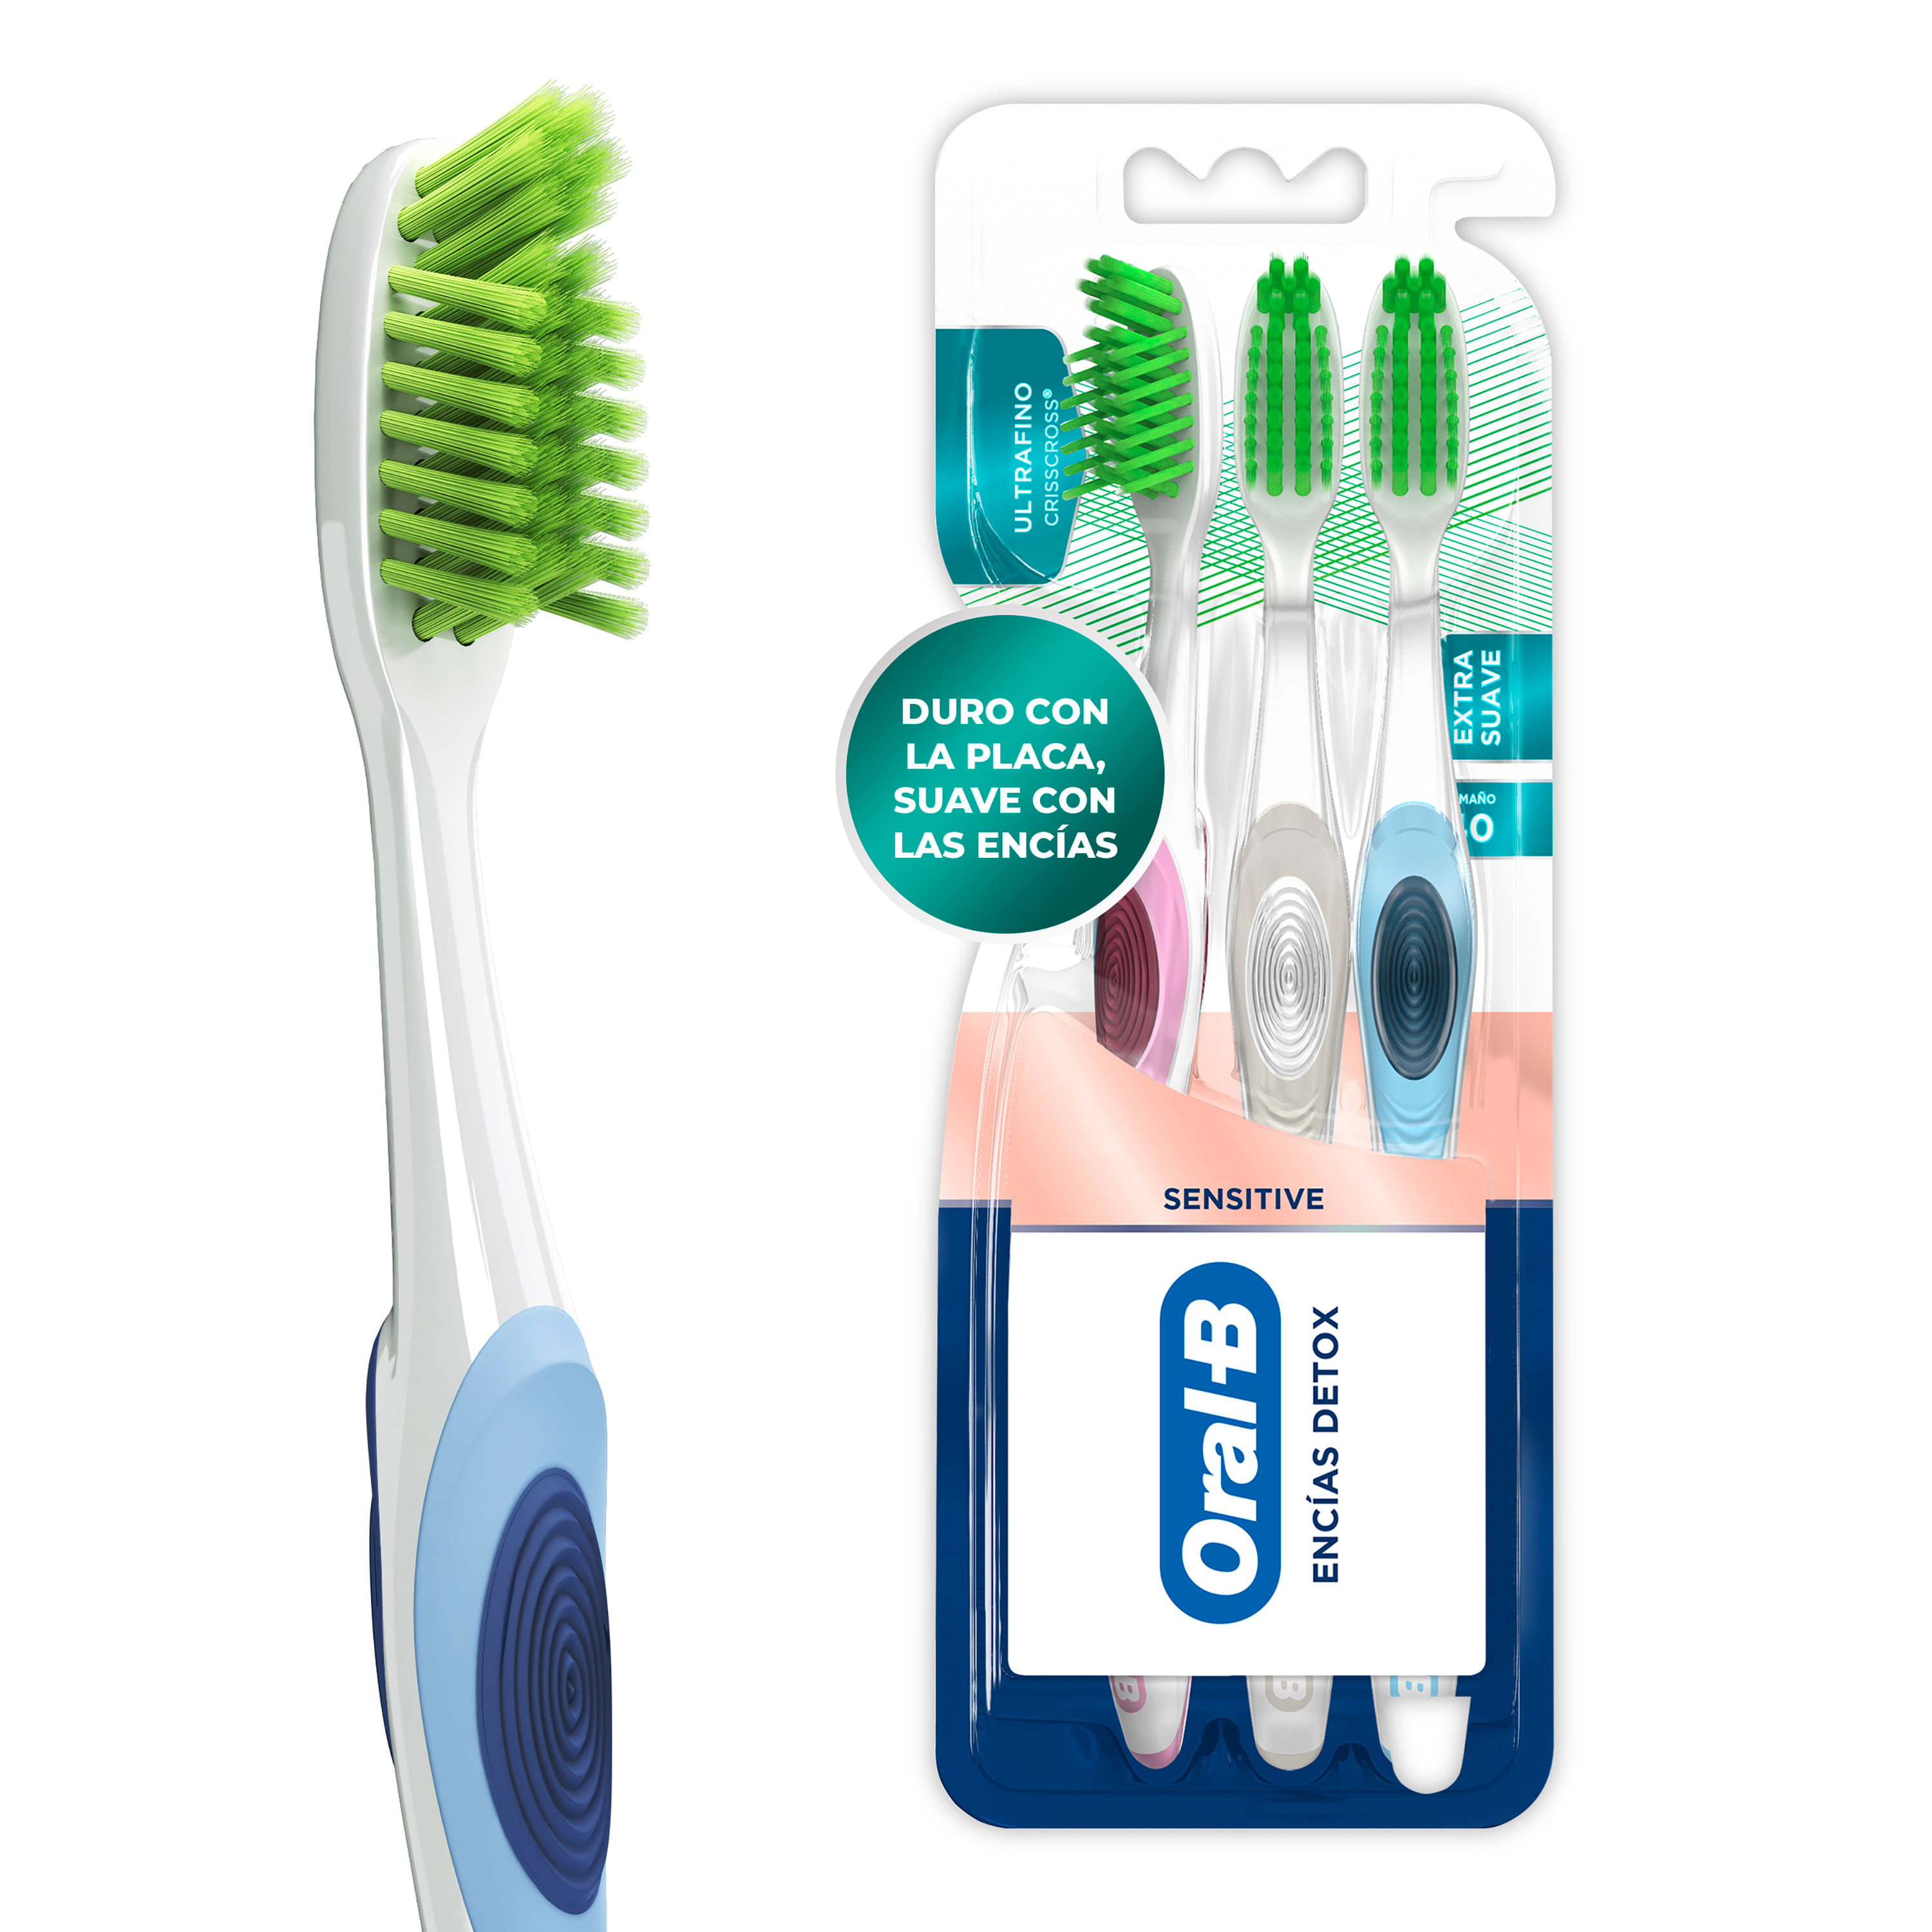 Paquete de 2 vasos de baño irrompibles para cepillo de dientes, suave y  duradero, vaso para cepillo de dientes (blanco y rosa)